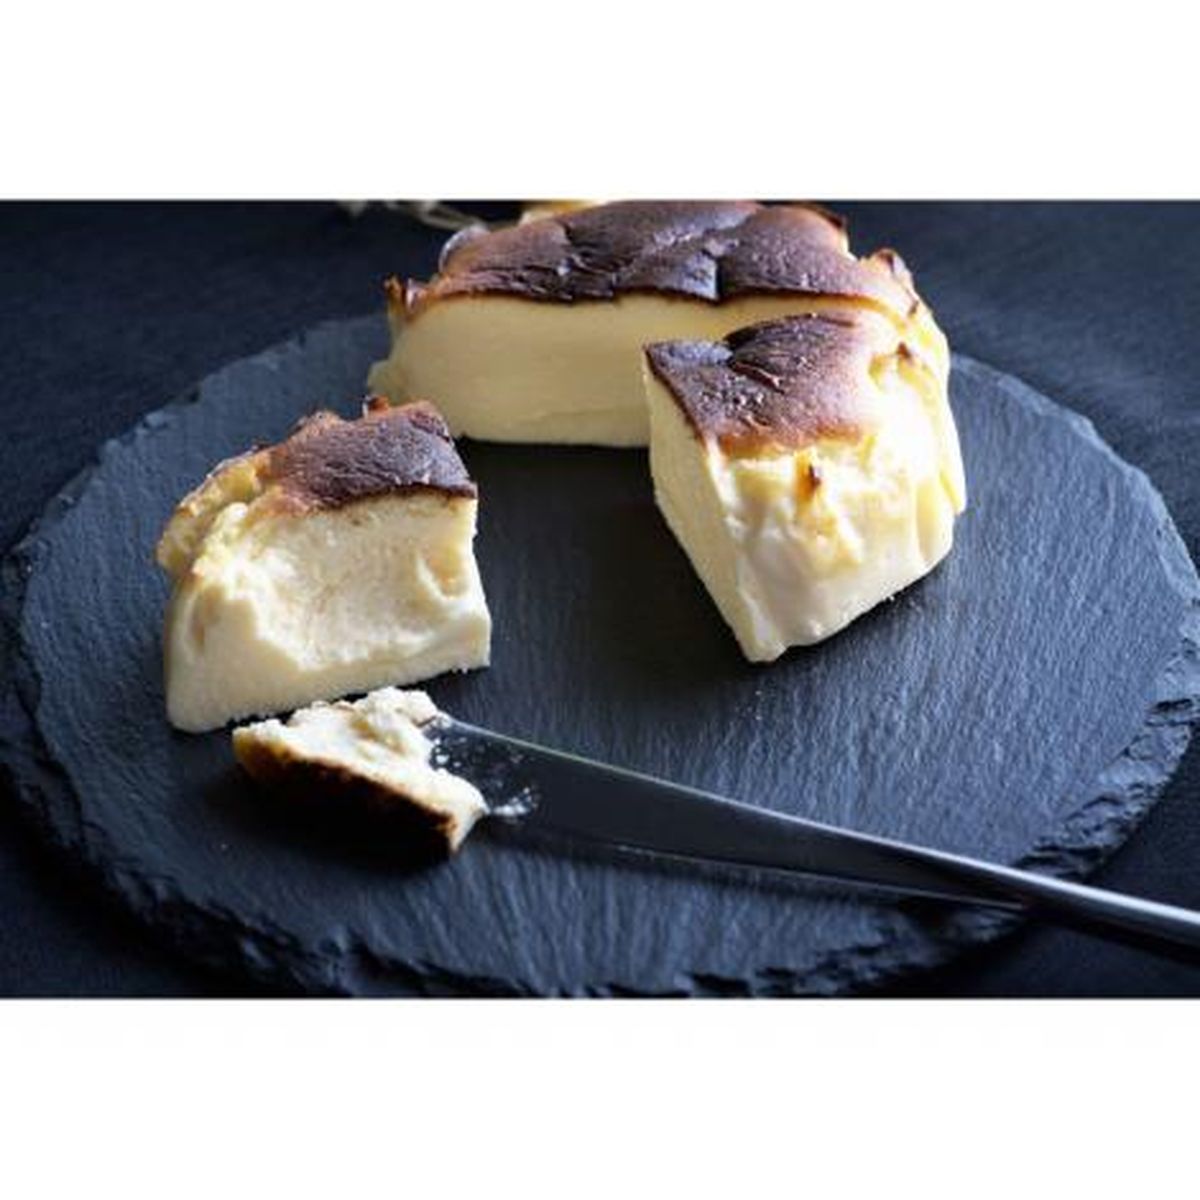 CINQ SENS(サンク サンス)オリジナル 米卵を使用したバスクチーズと日本一の茶師が手掛けた出雲産抹茶のチーズケーキセット(直径9cm×2個)